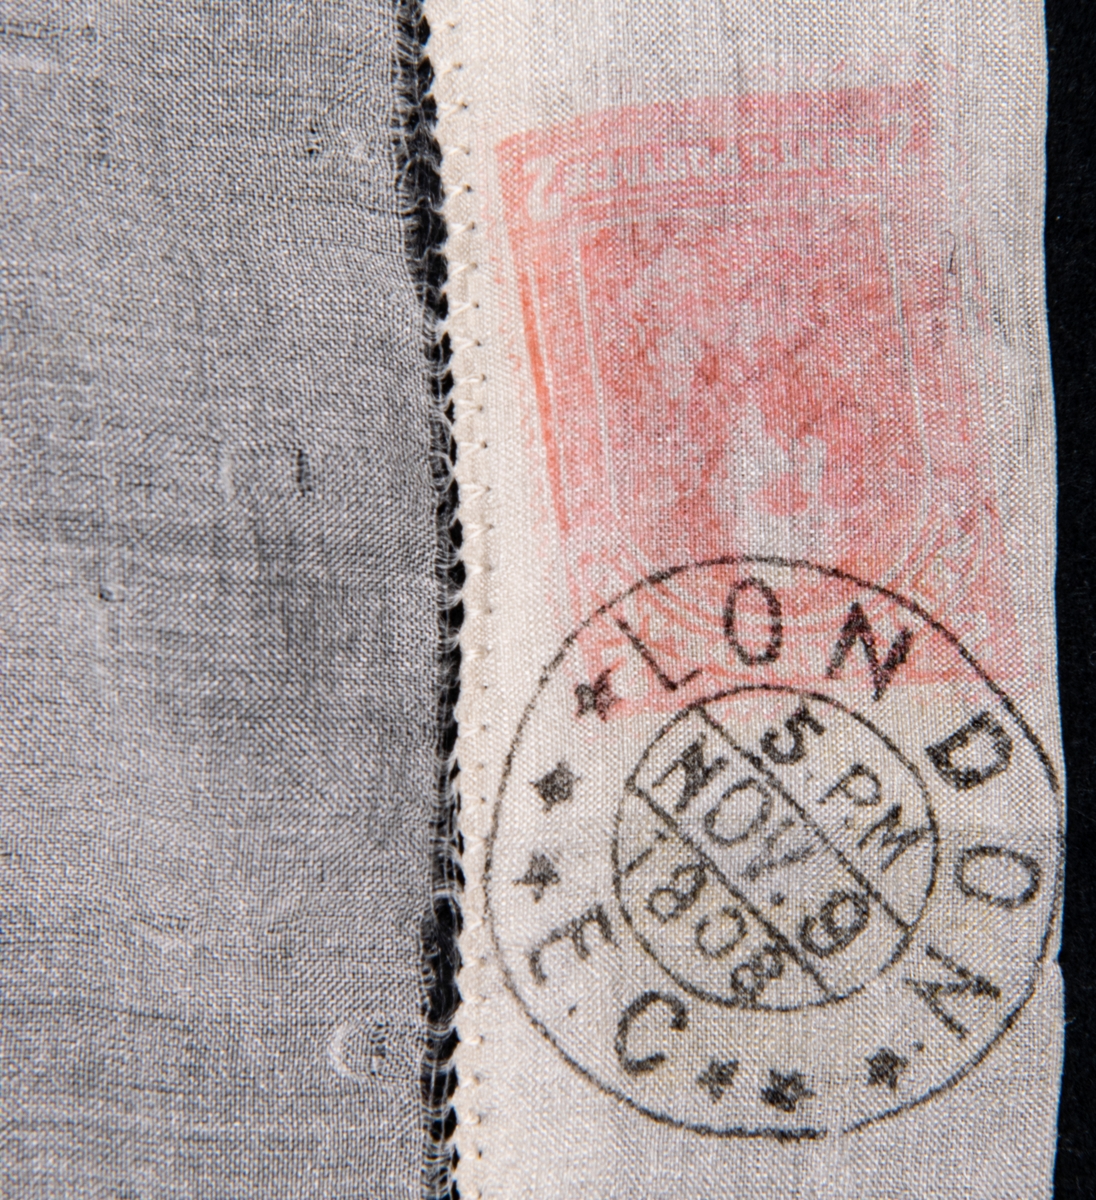 Näsduk av vitt sidentyg med handsydd fåll. Fållen försedd med avbildningar av frimärken samt poststämplar.